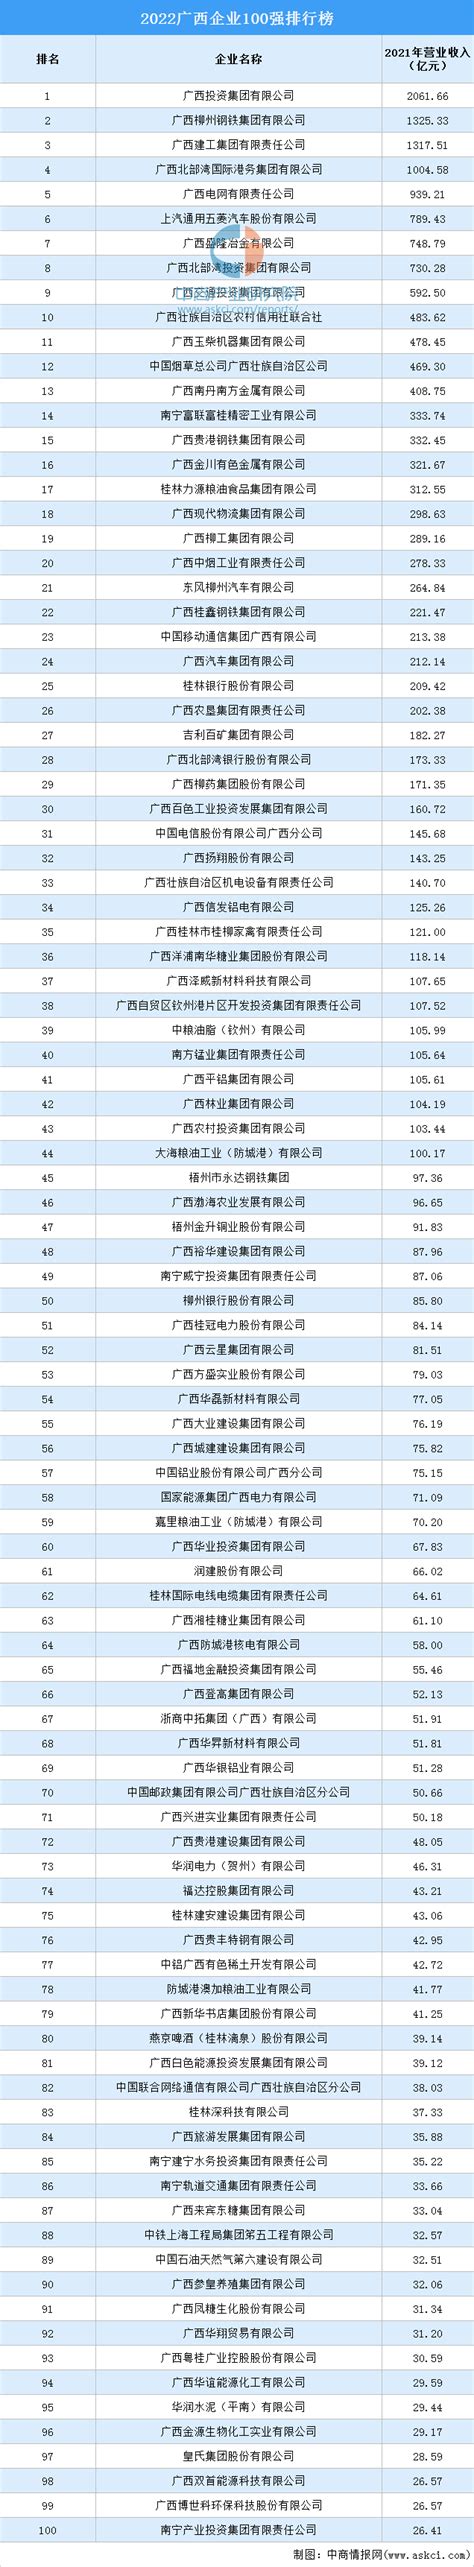 2022广西企业100强排行榜（附完整榜单）-排行榜-中商情报网